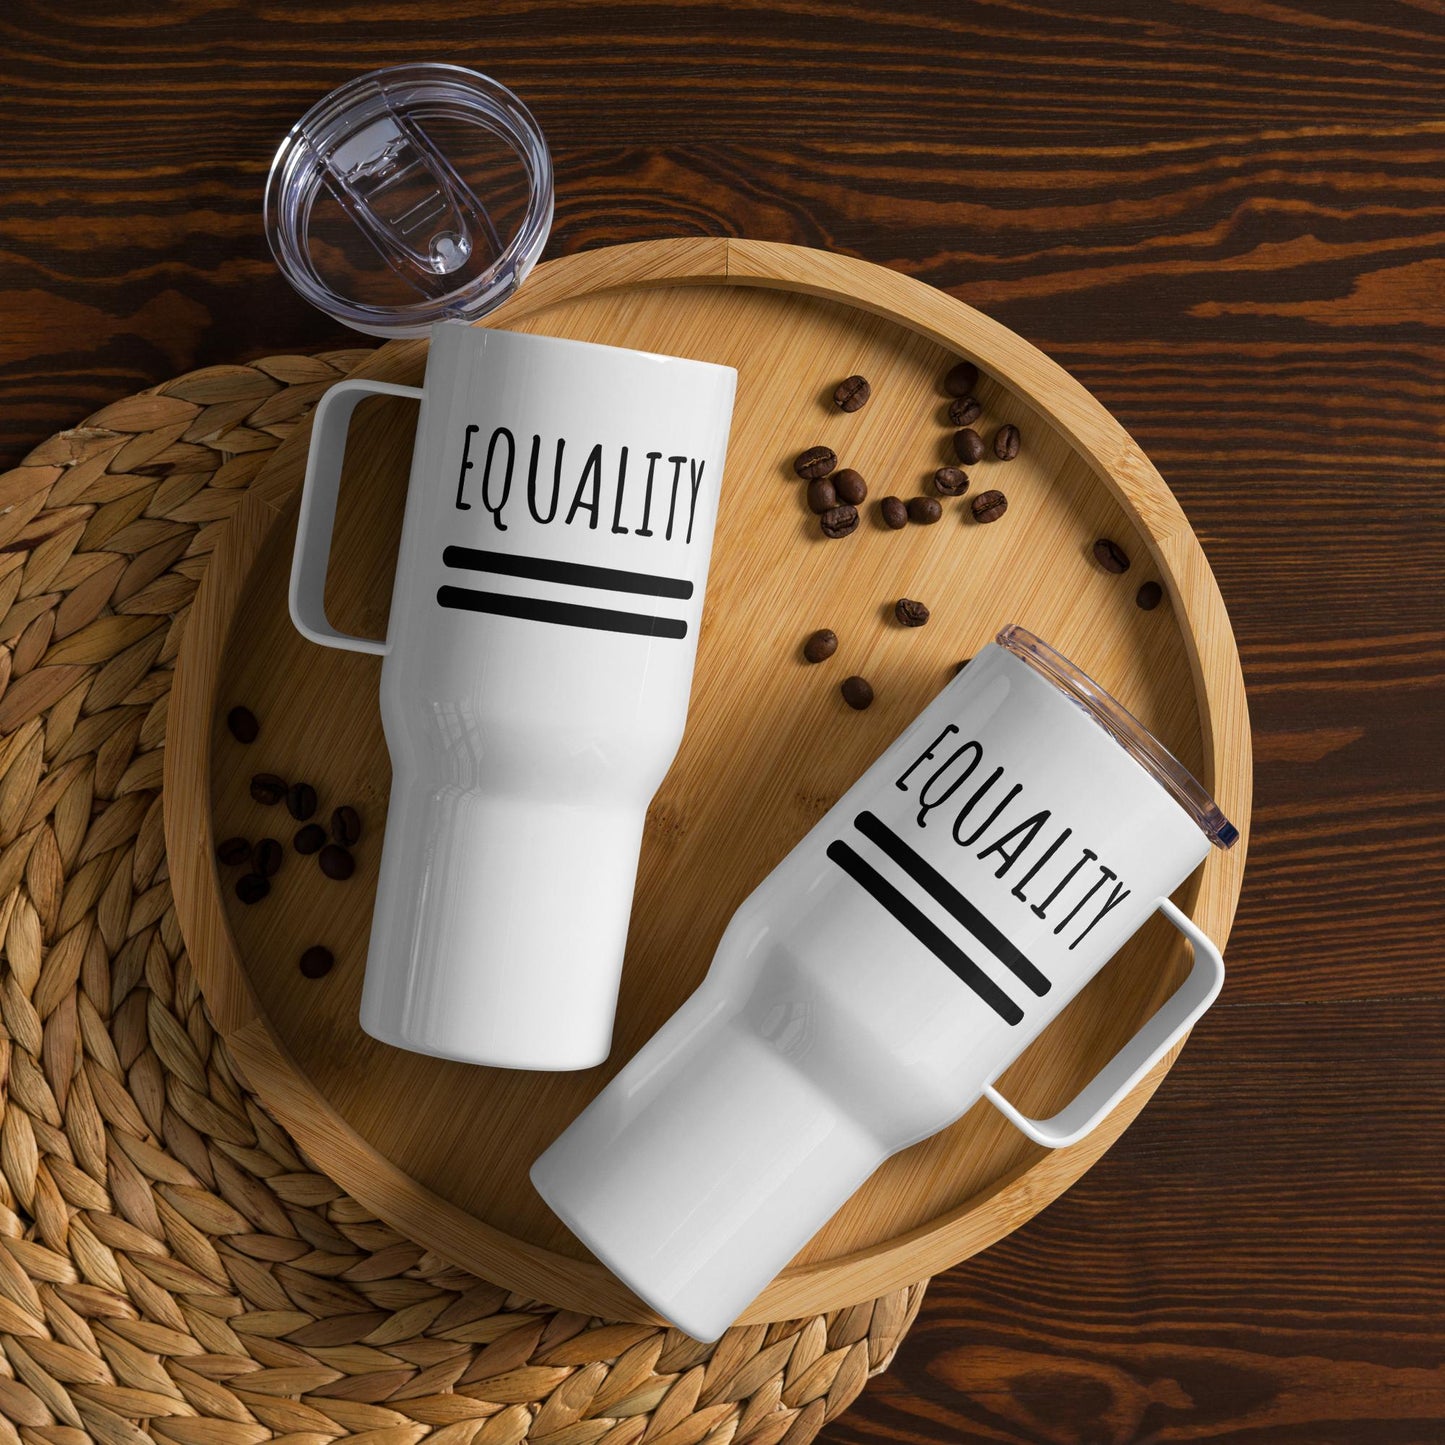 Equality - Travel mug with a handle